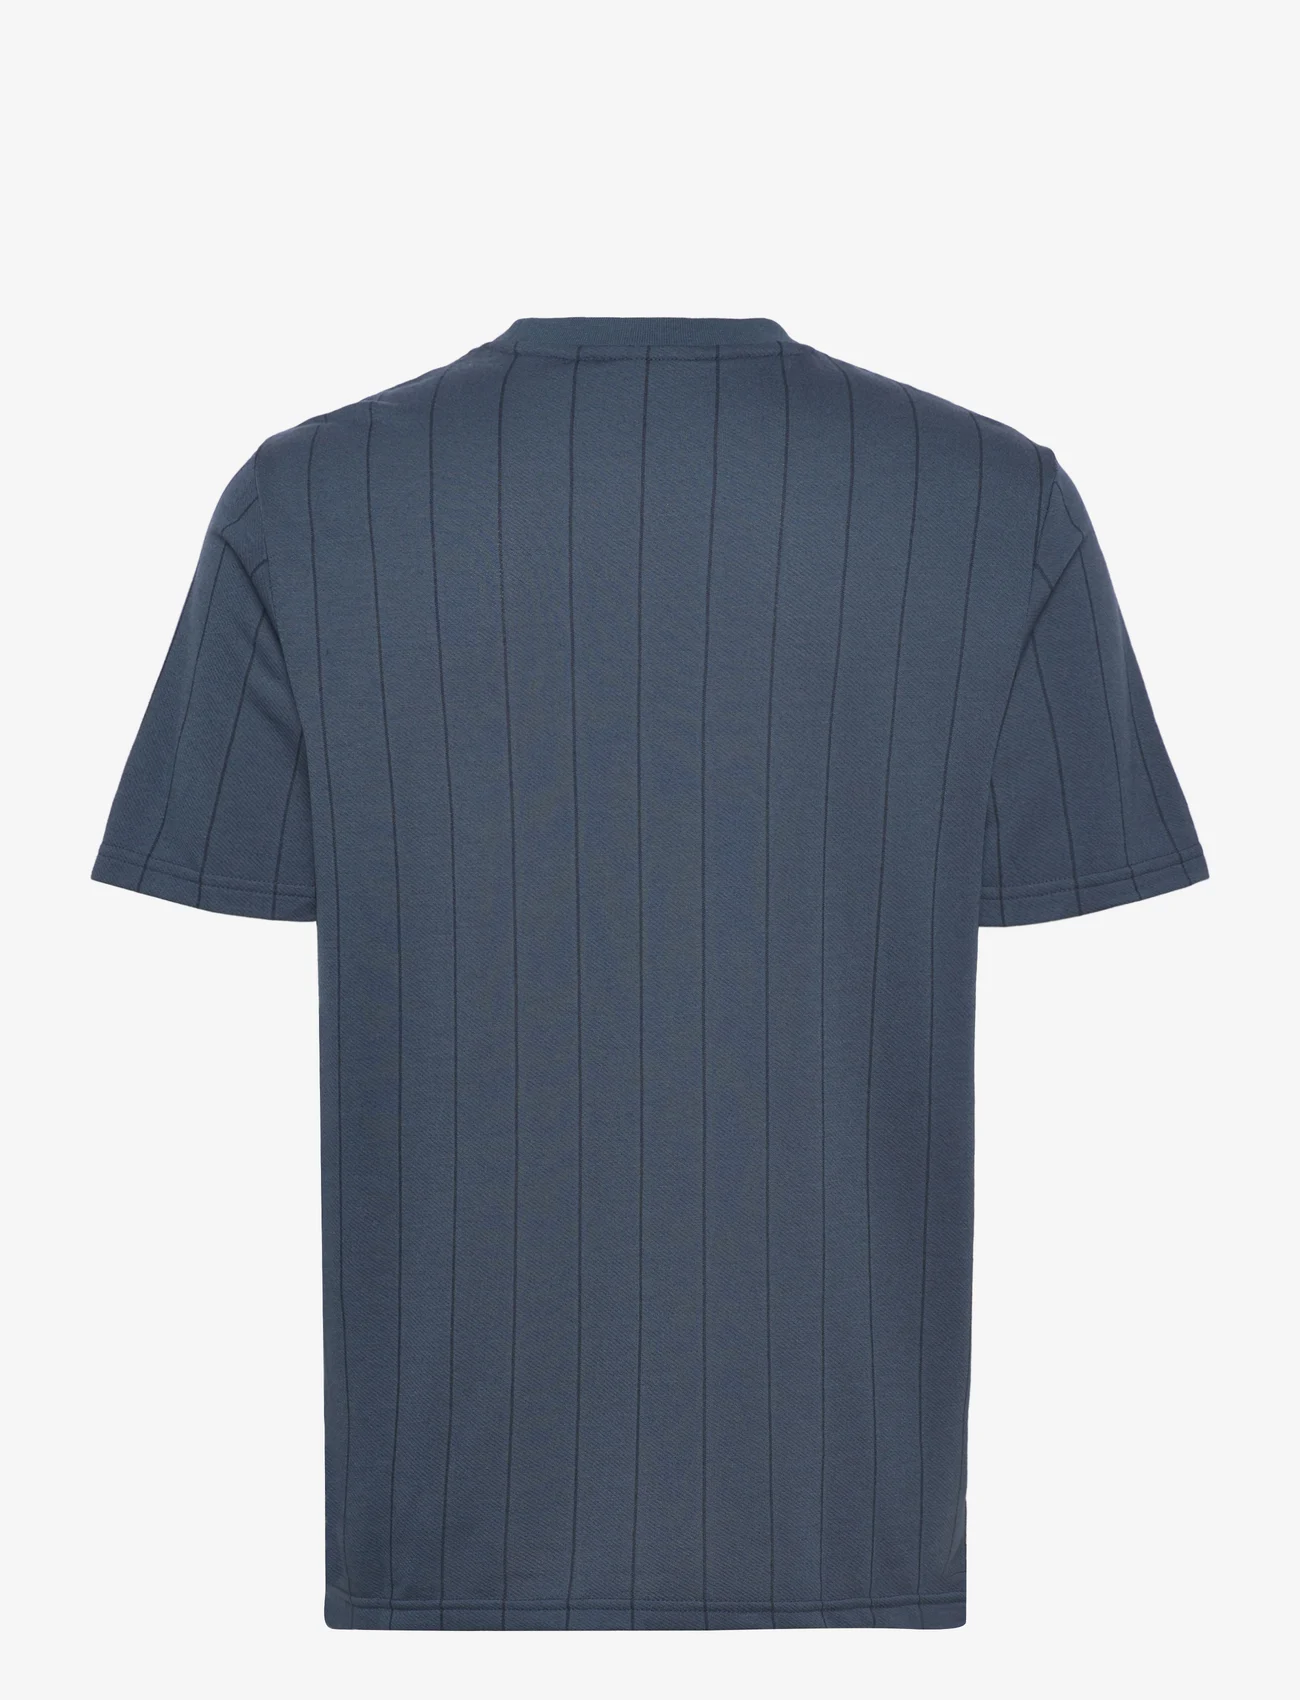 Lyle & Scott - Pinstripe T-shirt - die niedrigsten preise - w992 apres navy - 1